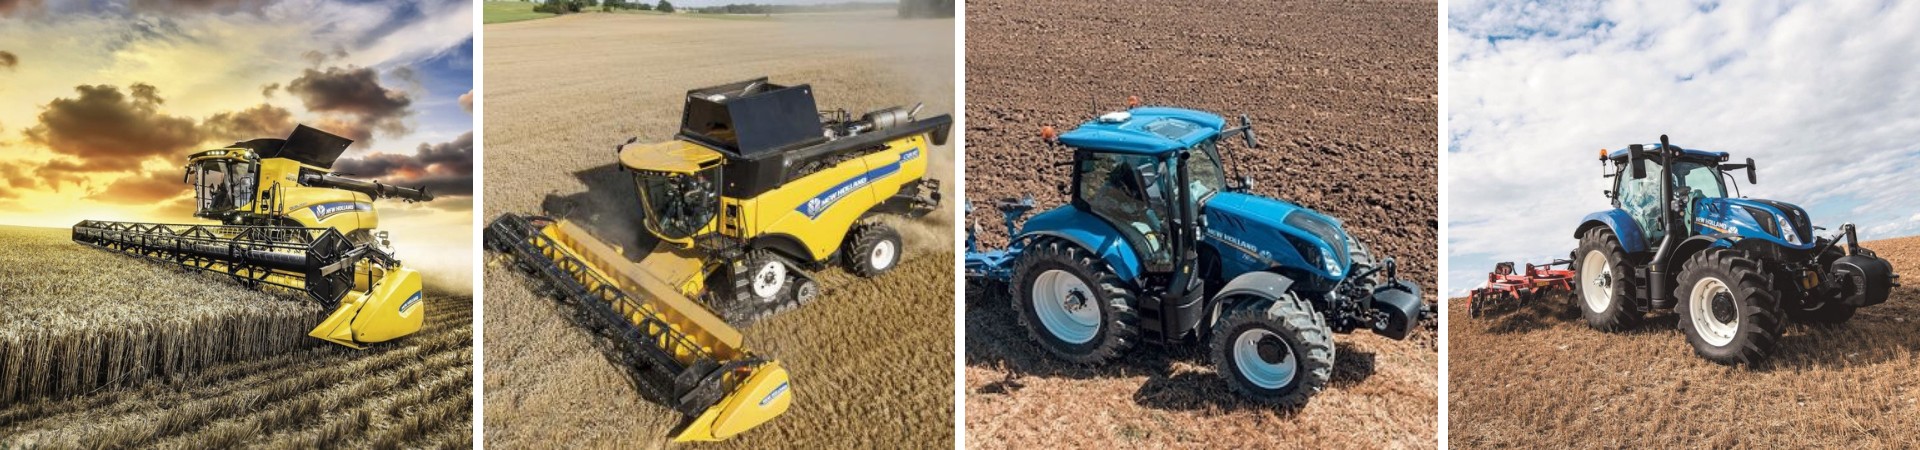 New Holland traktor og høstmaskiner